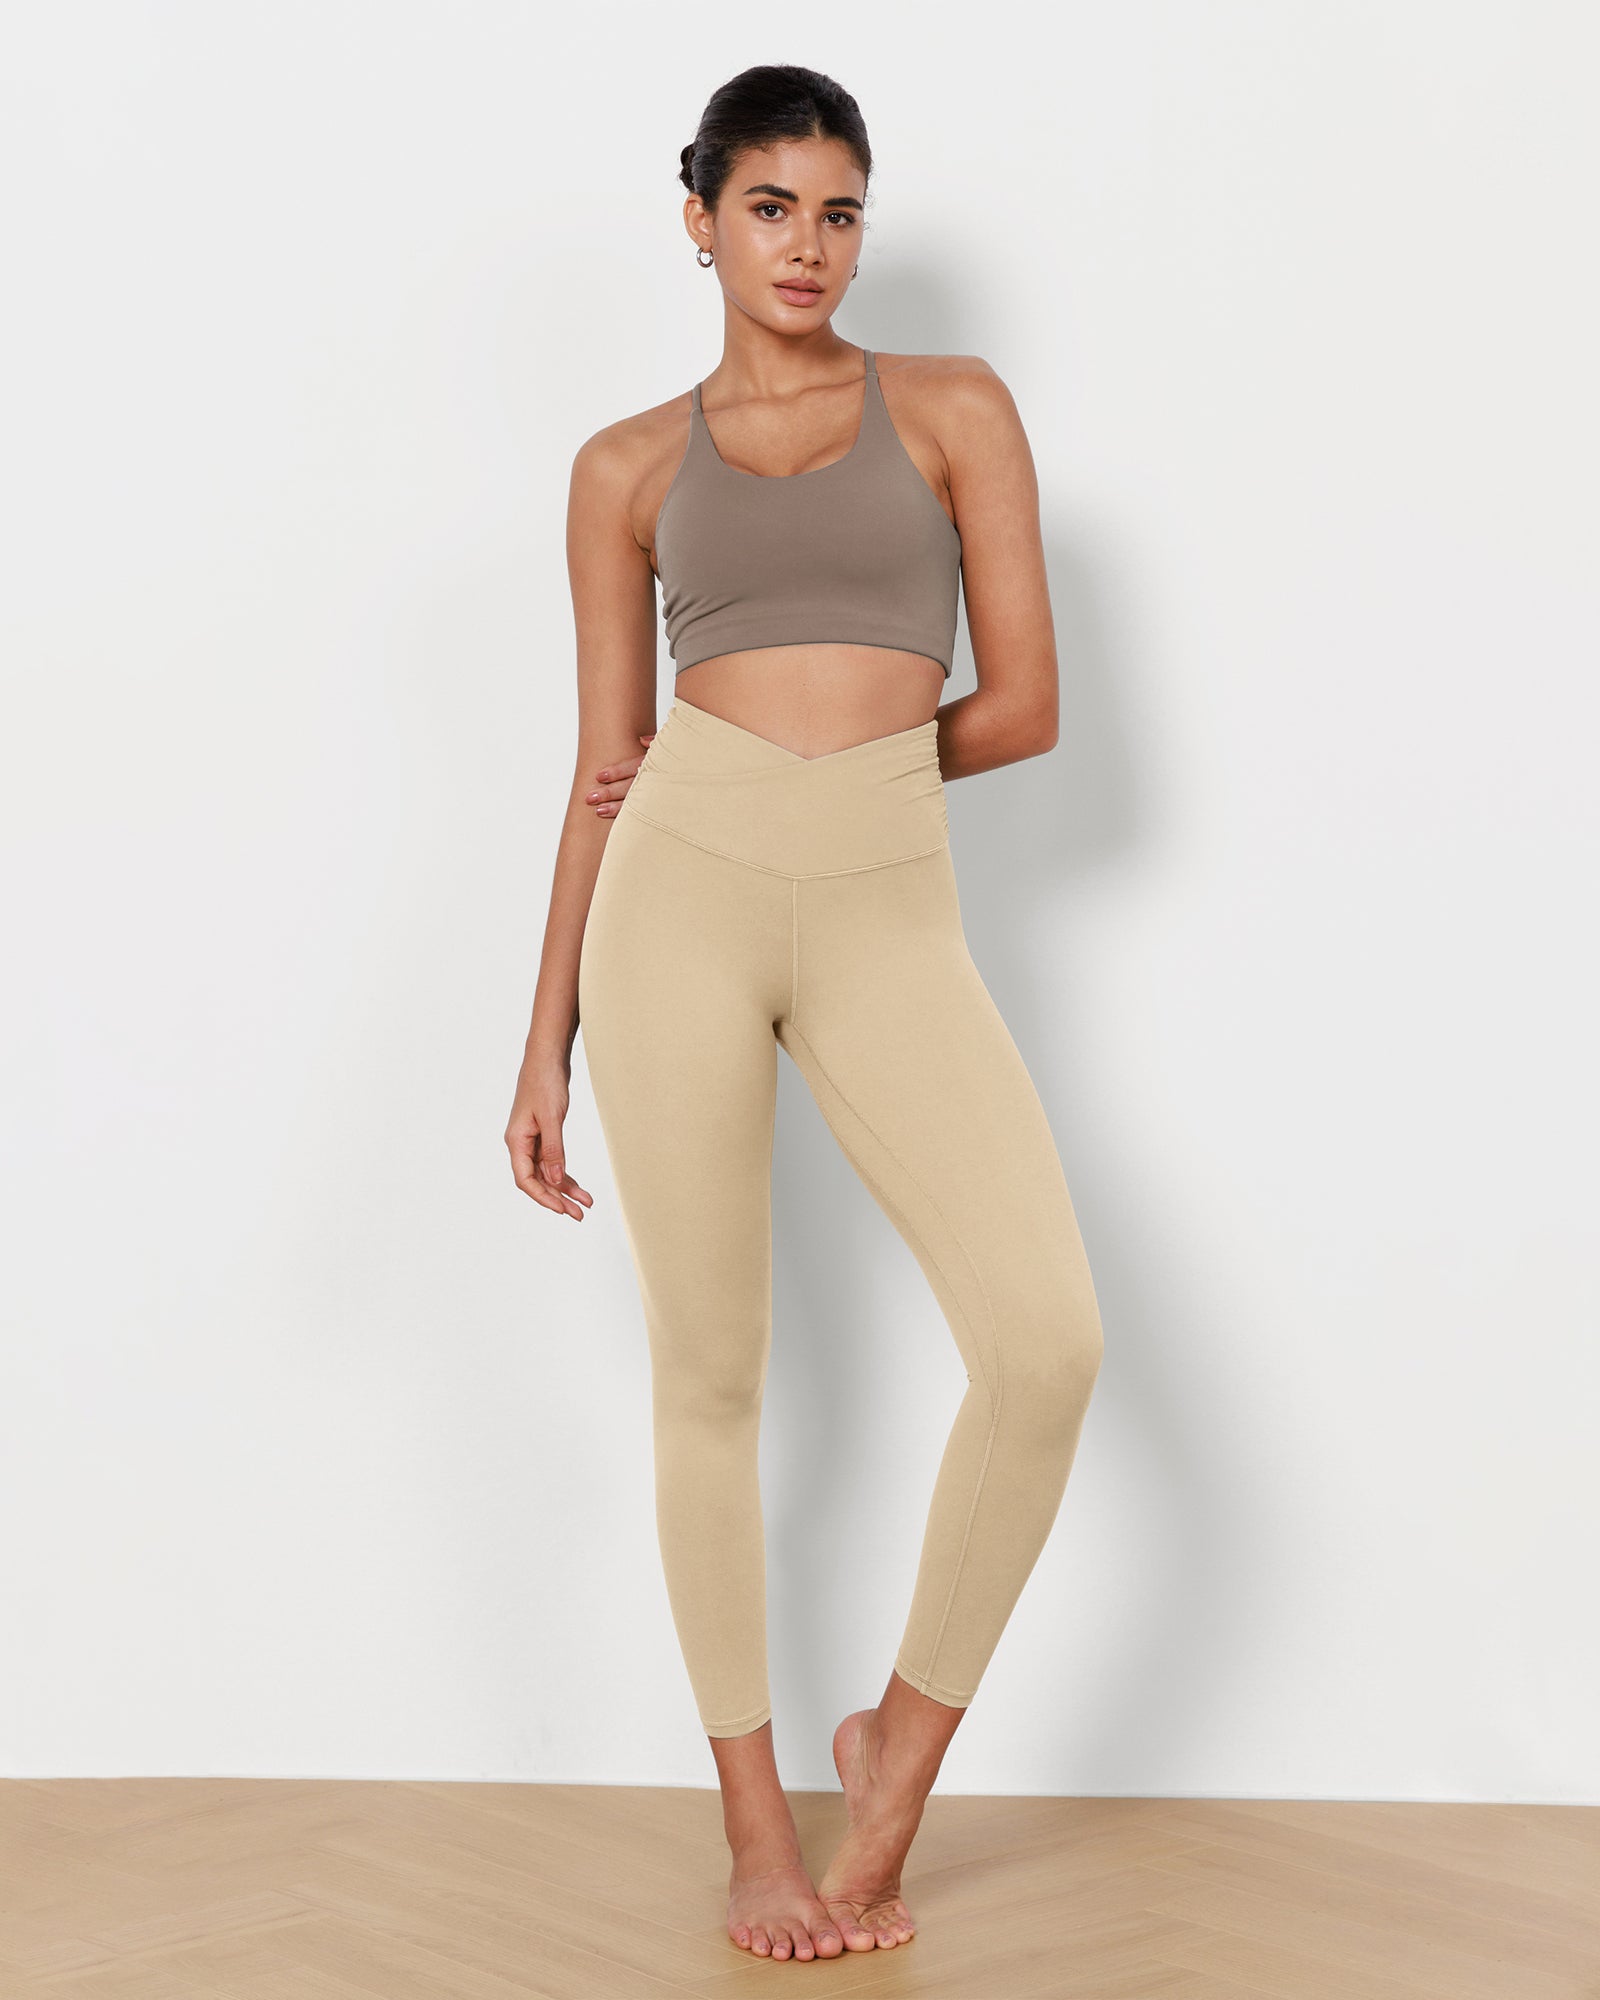  Zathe Dark Goldenrod Yoga Pants for Women Running 7/8